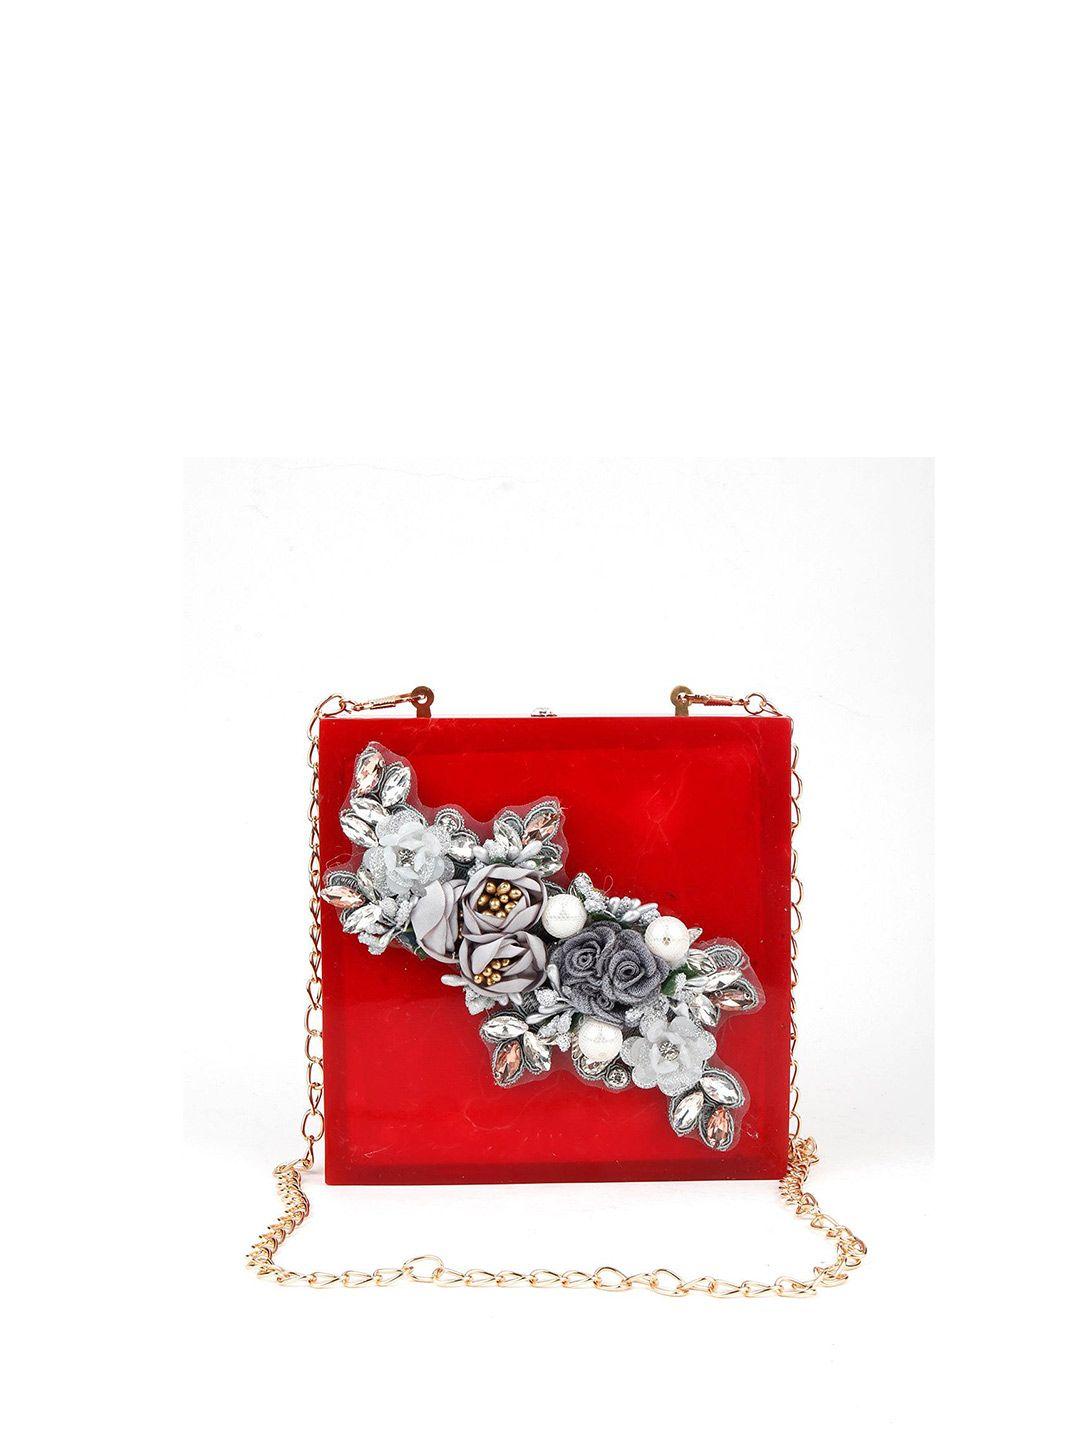 odette embellished box clutch with sling strap